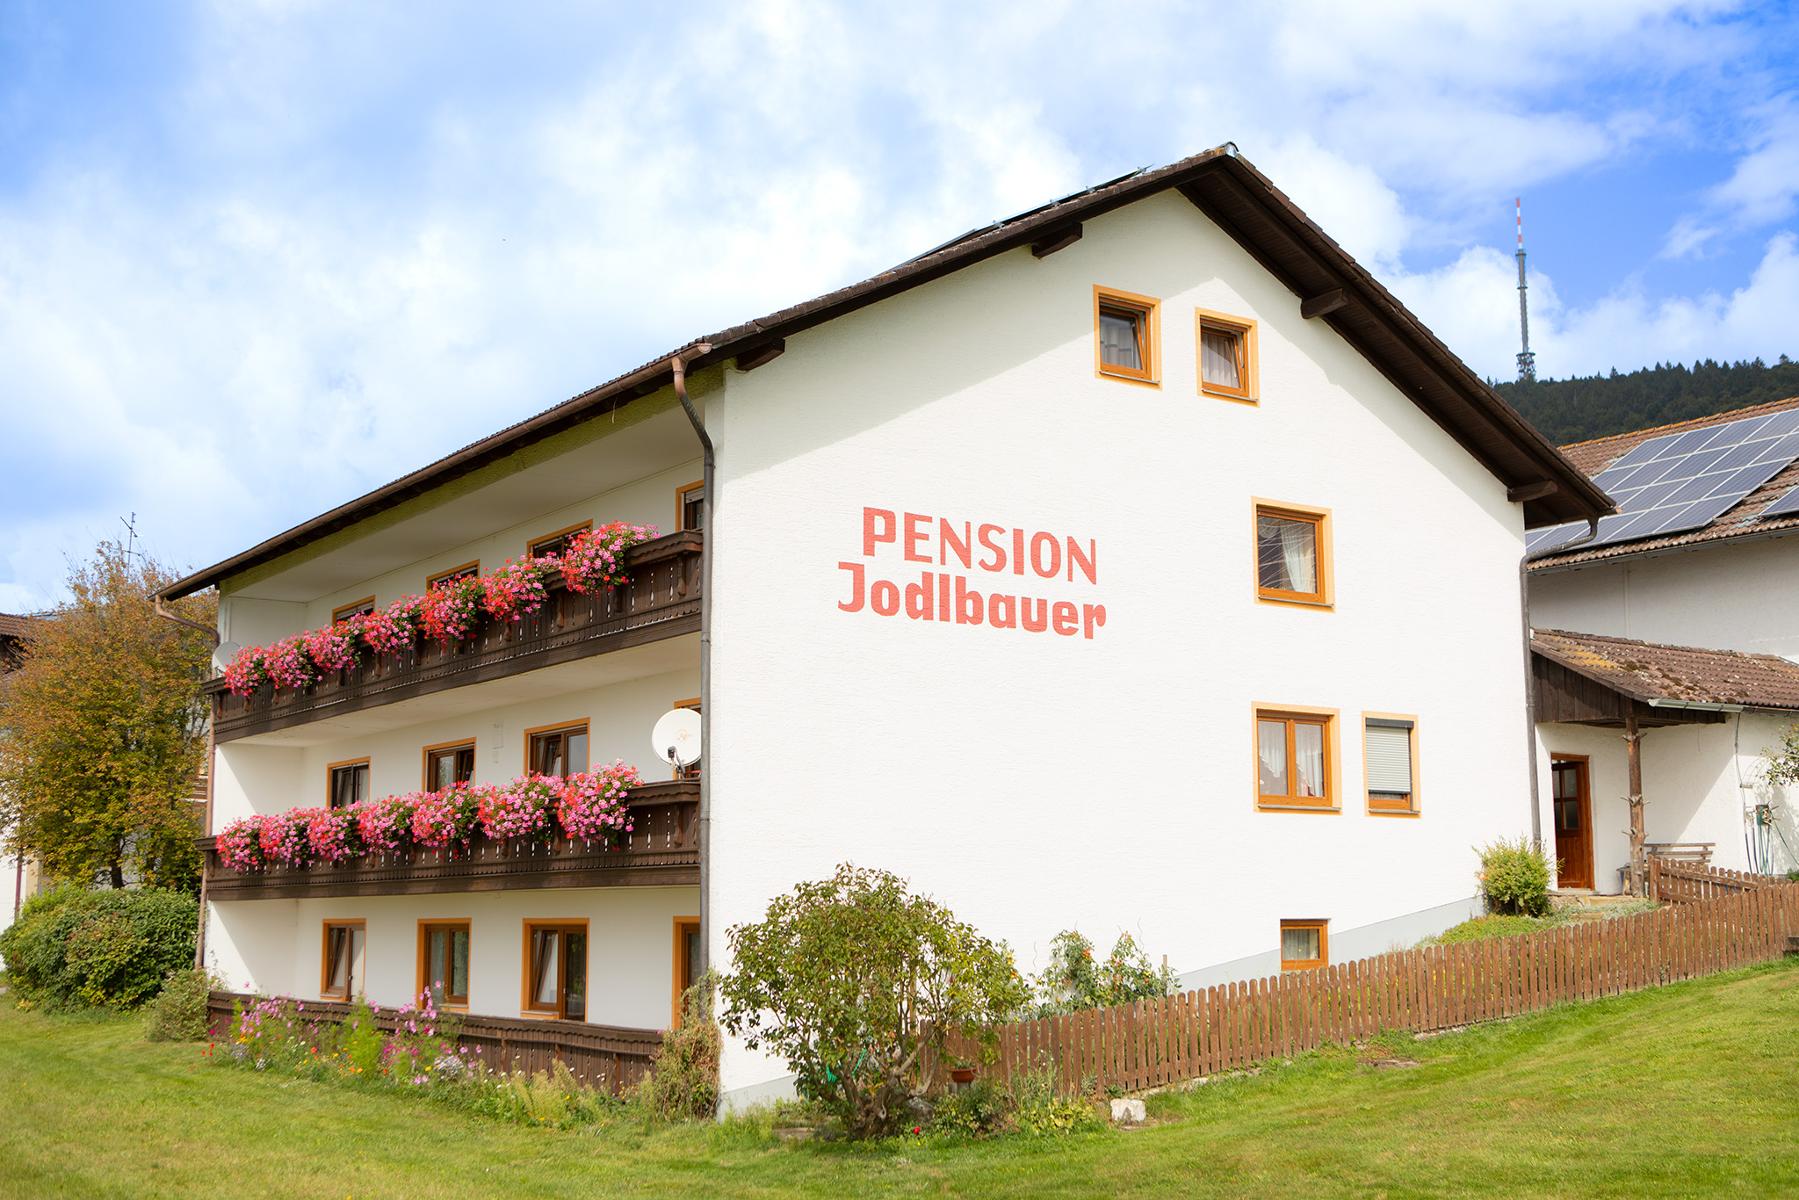 Pension Jodlbauer in Schöllnach